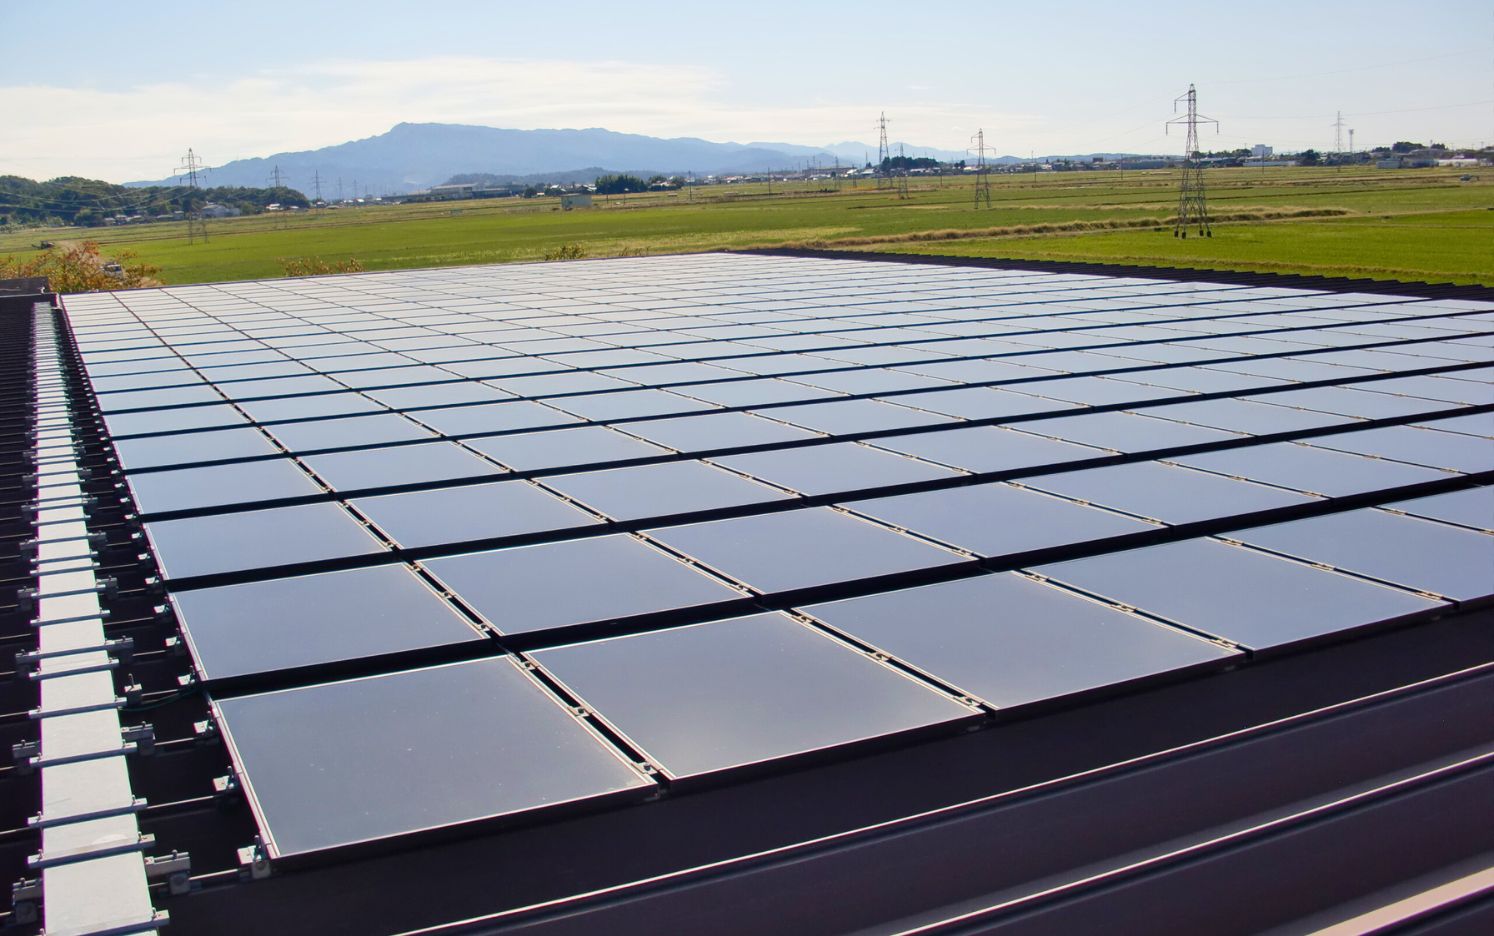 太陽光パネルをPPAにより導入。電気料金の値上げをきっかけに実施。全ての屋根にパネルが設置されており、全ての電力使用量の3割程度を再エネ電力で賄っている。